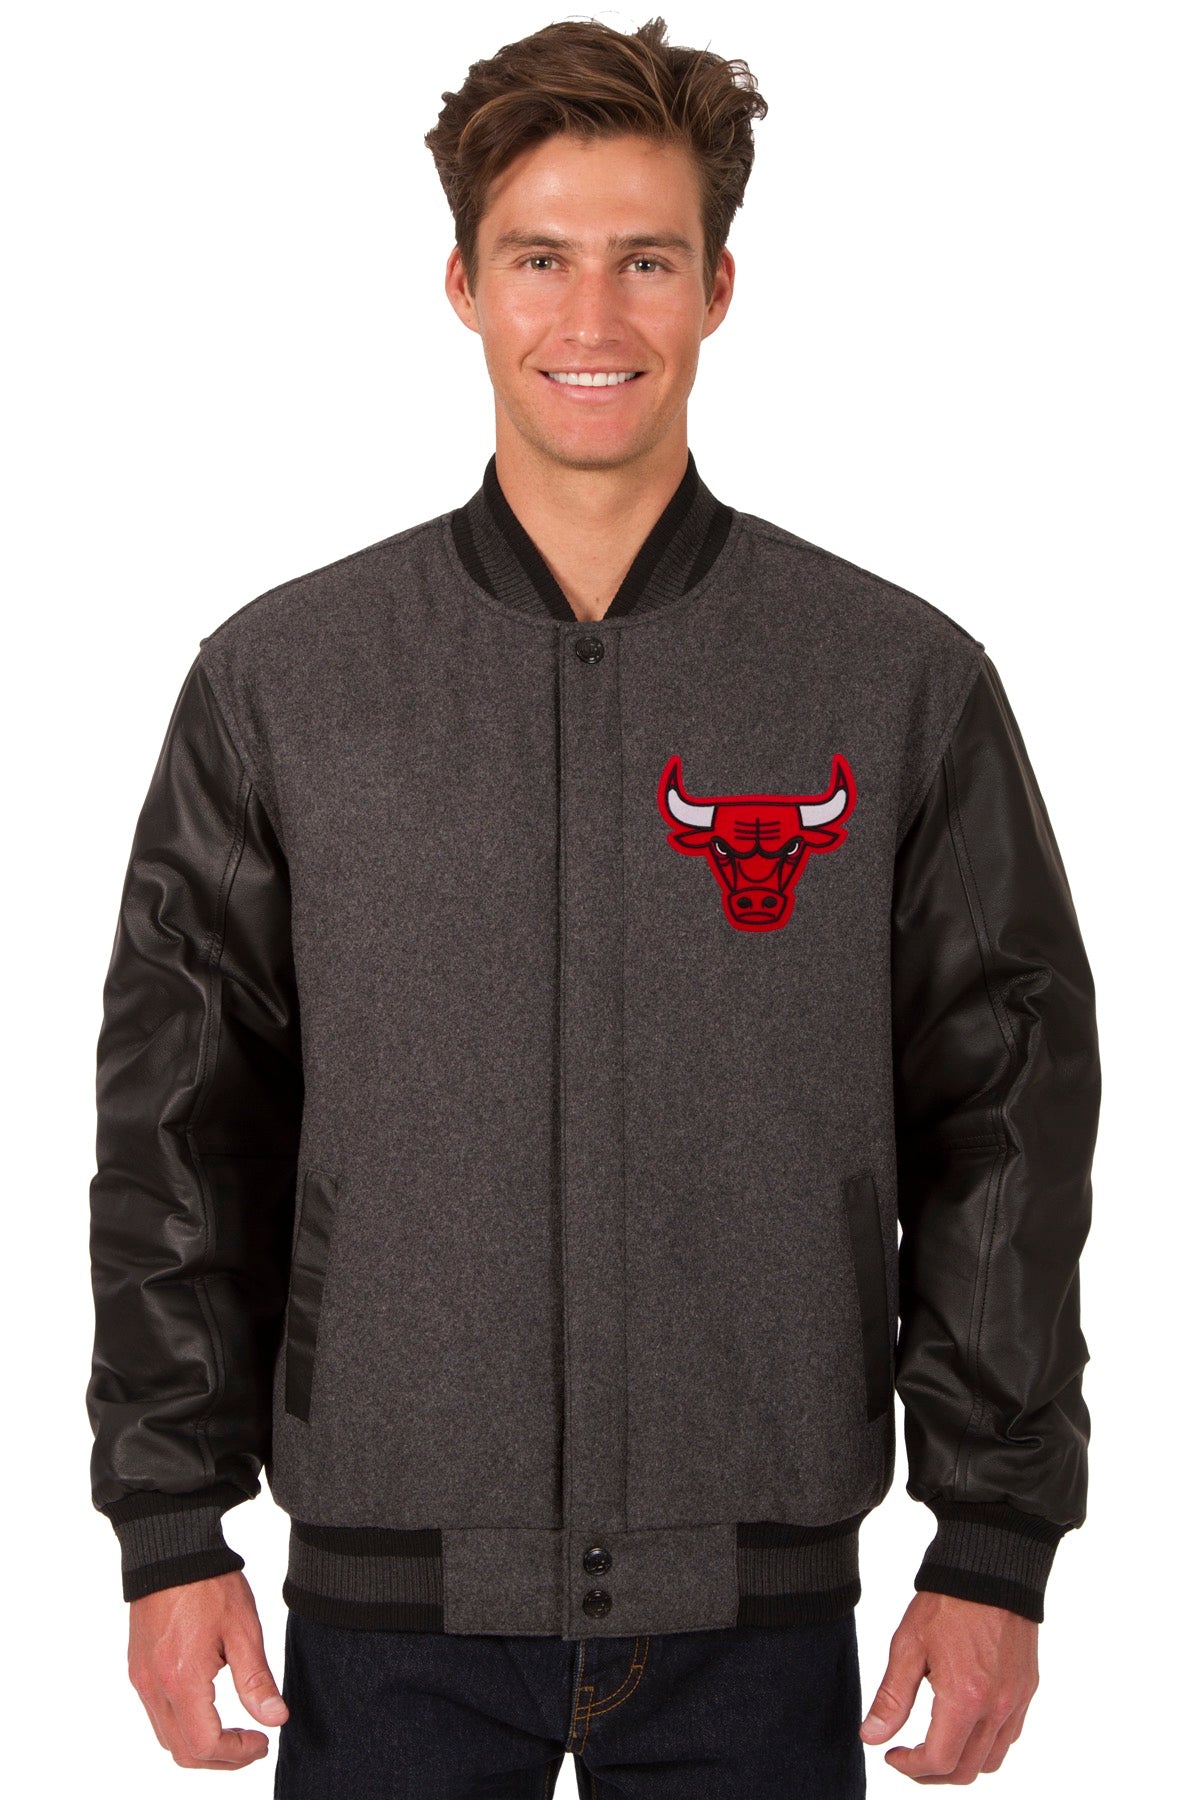 Chicago Bulls Varsity Jacket - William Jacket